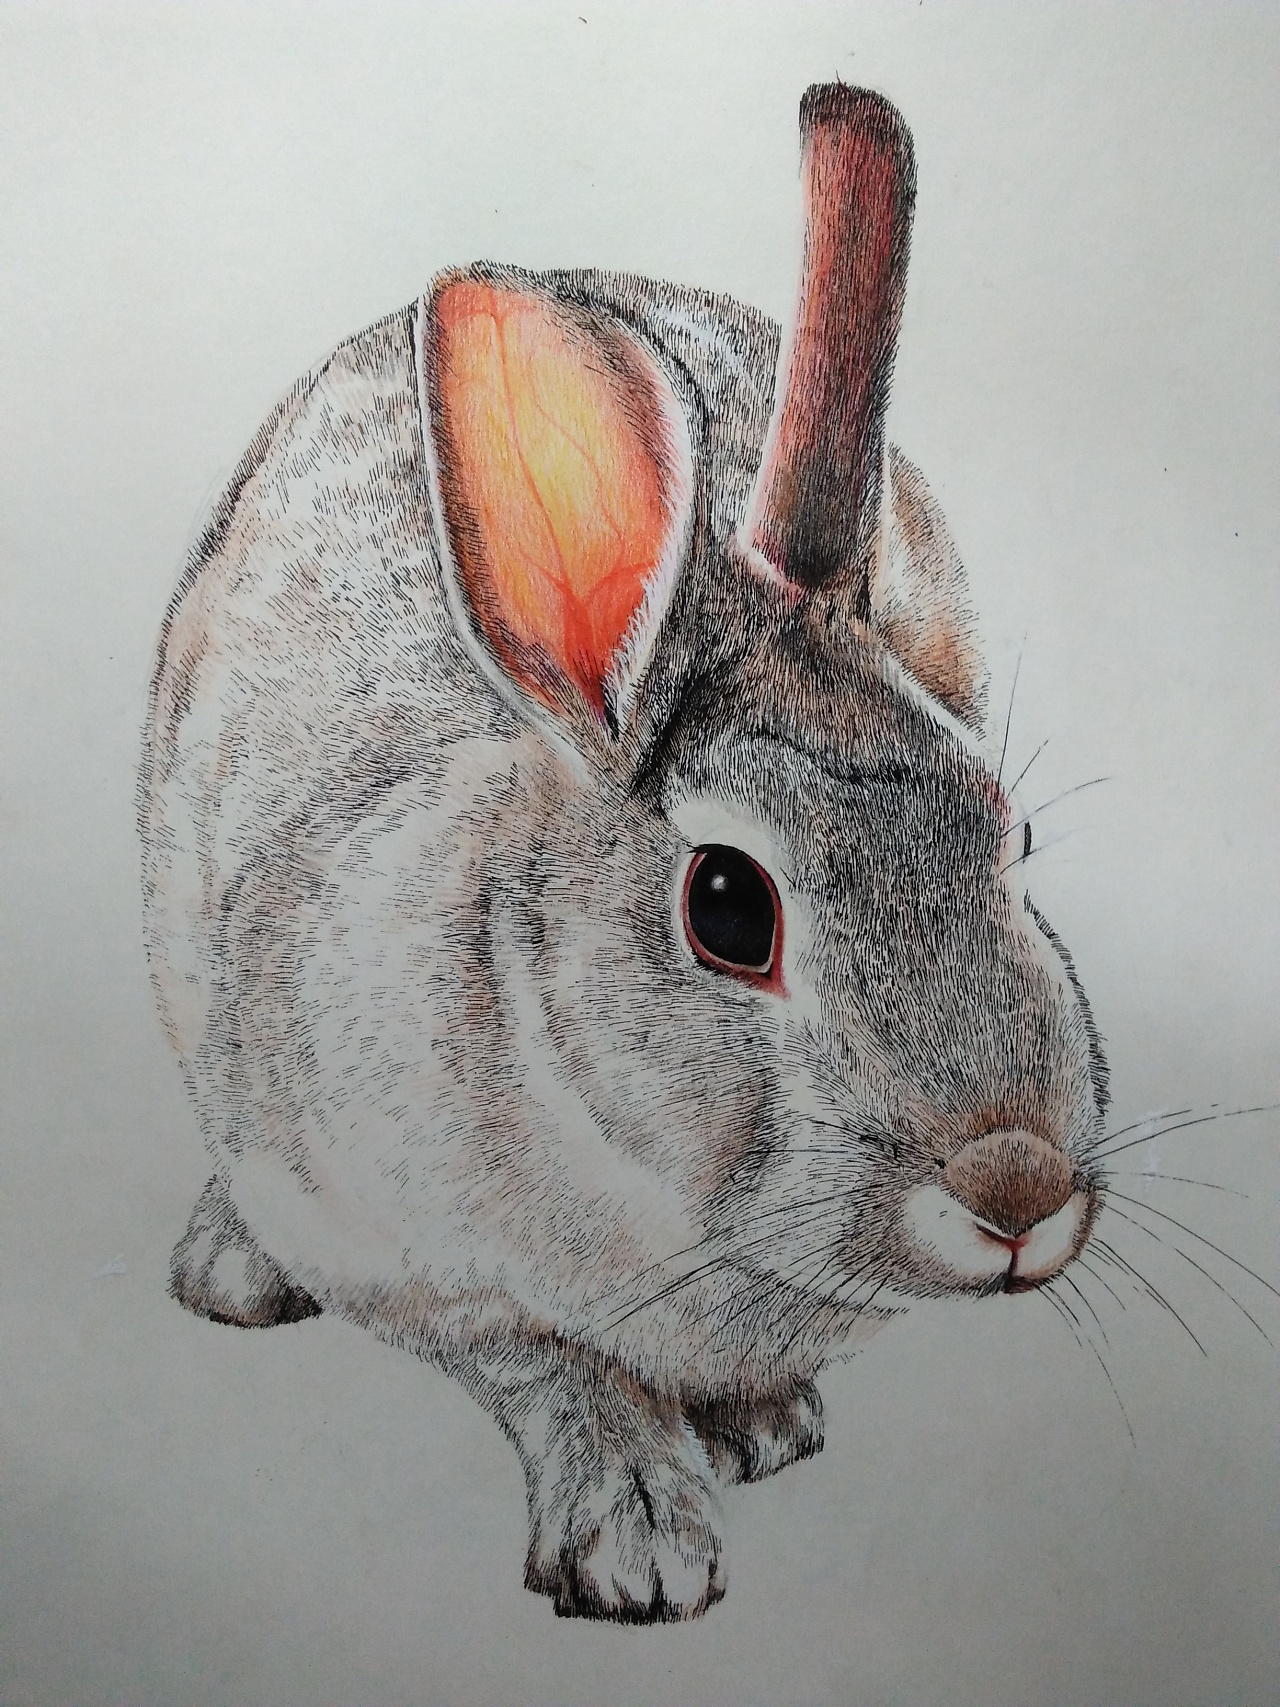 小兔子简笔画怎么画？